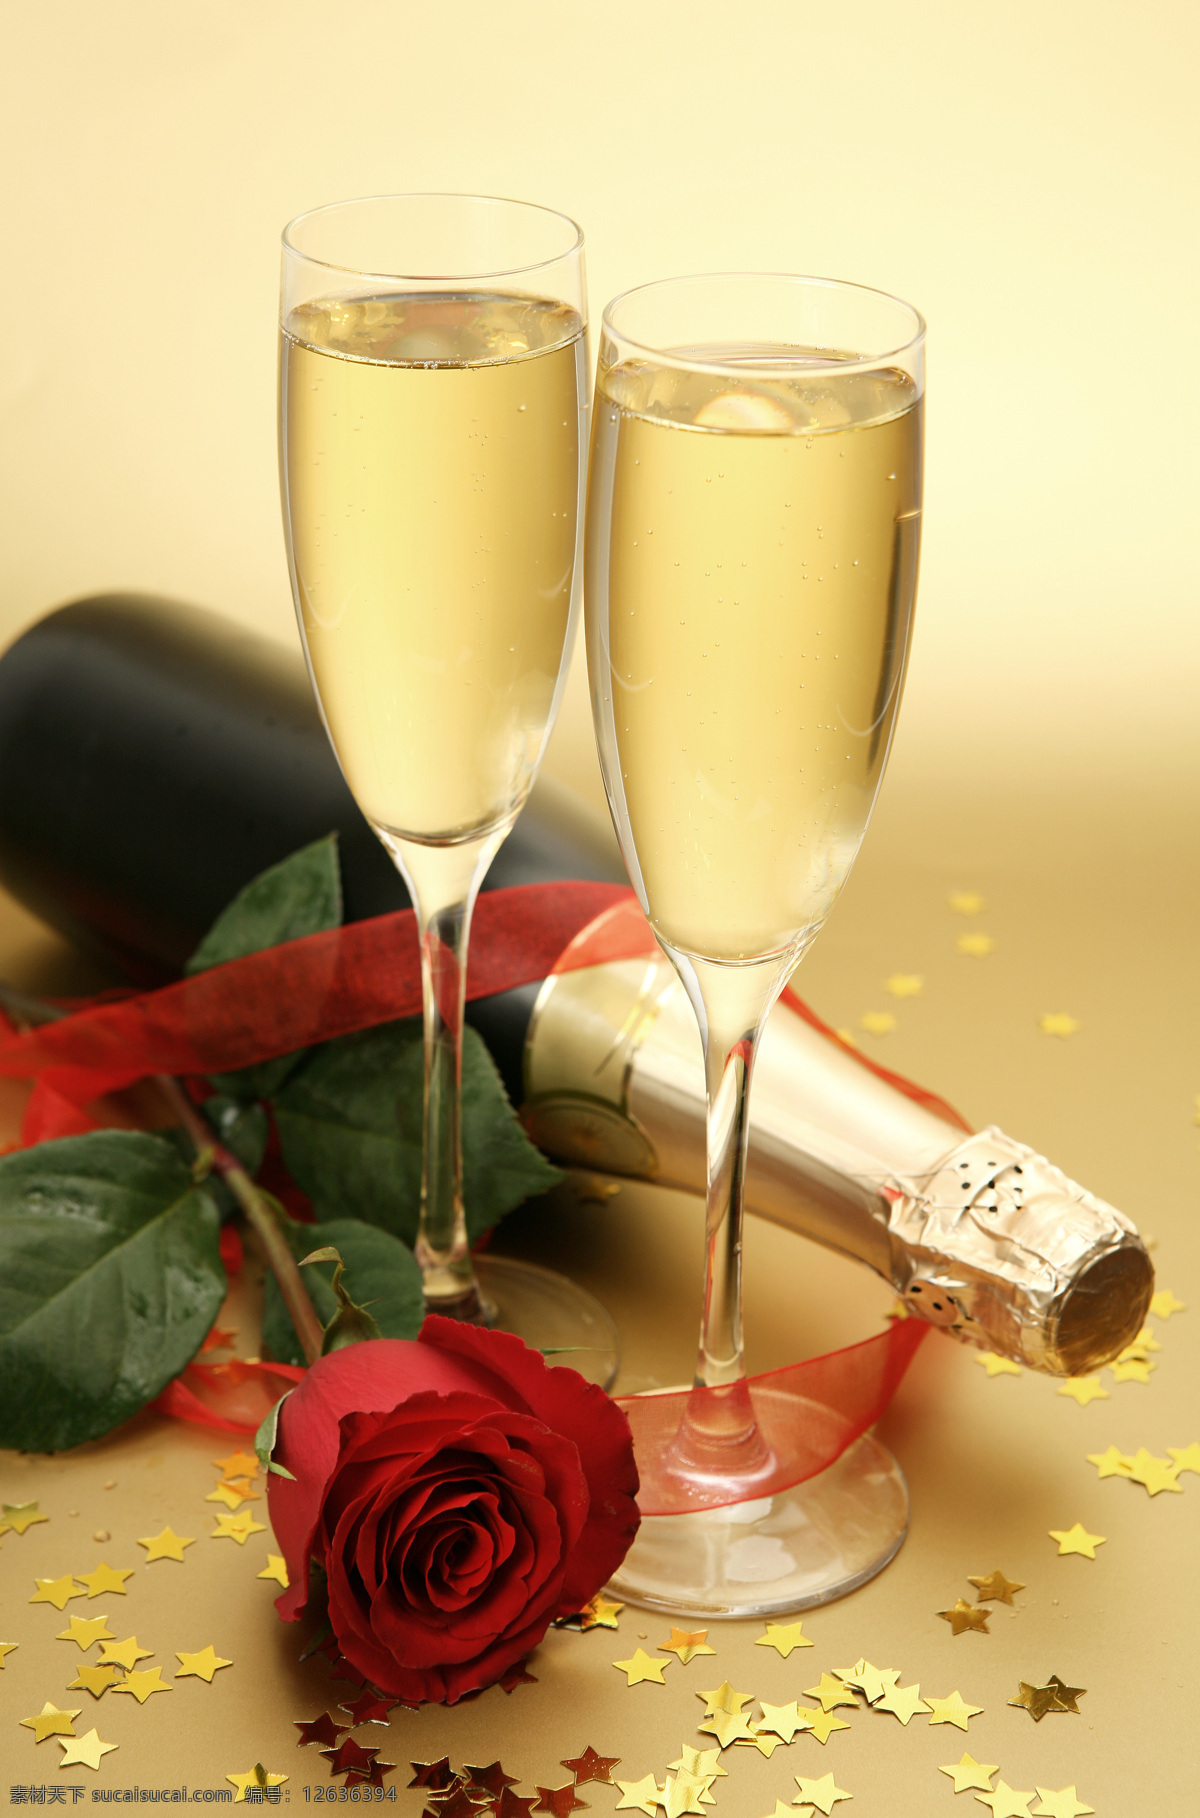 玫瑰花与香槟 香槟 玫瑰花 瓶子 高脚杯 玻璃杯子 香槟摄影 酒水饮料 餐饮美食 黄色